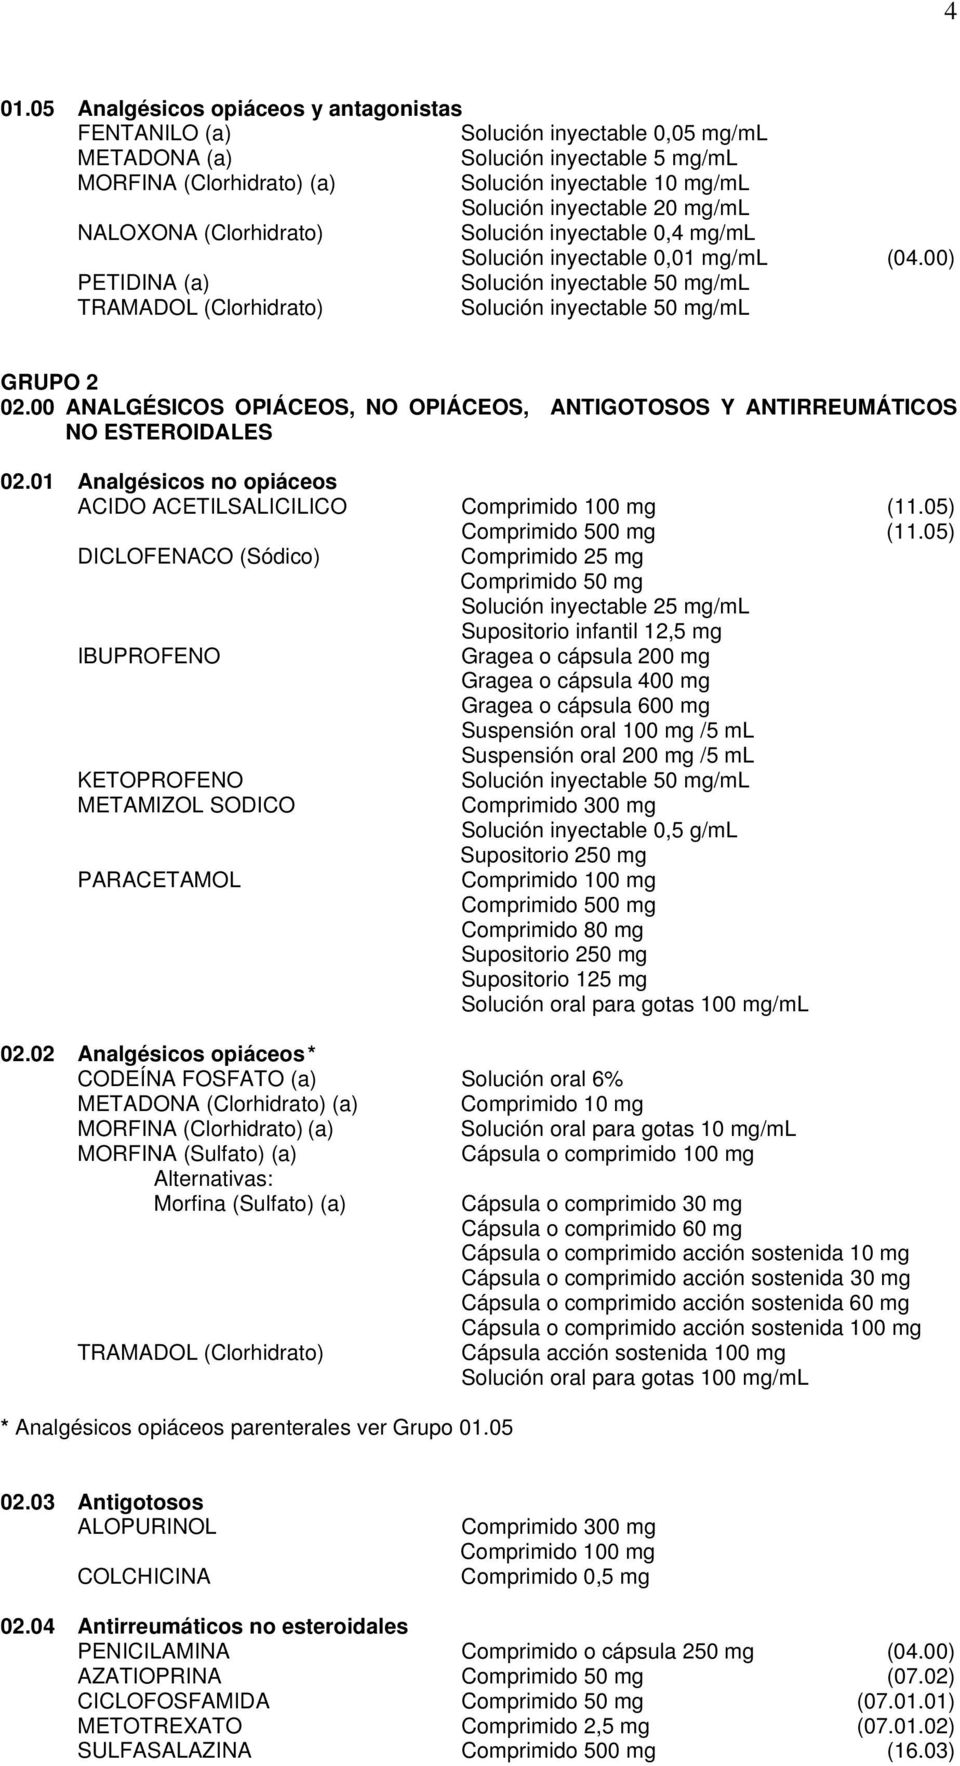 00) PETIDINA (a) Solución inyectable 50 mg/ml TRAMADOL (Clorhidrato) Solución inyectable 50 mg/ml GRUPO 2 02.00 ANALGÉSICOS OPIÁCEOS, NO OPIÁCEOS, ANTIGOTOSOS Y ANTIRREUMÁTICOS NO ESTEROIDALES 02.